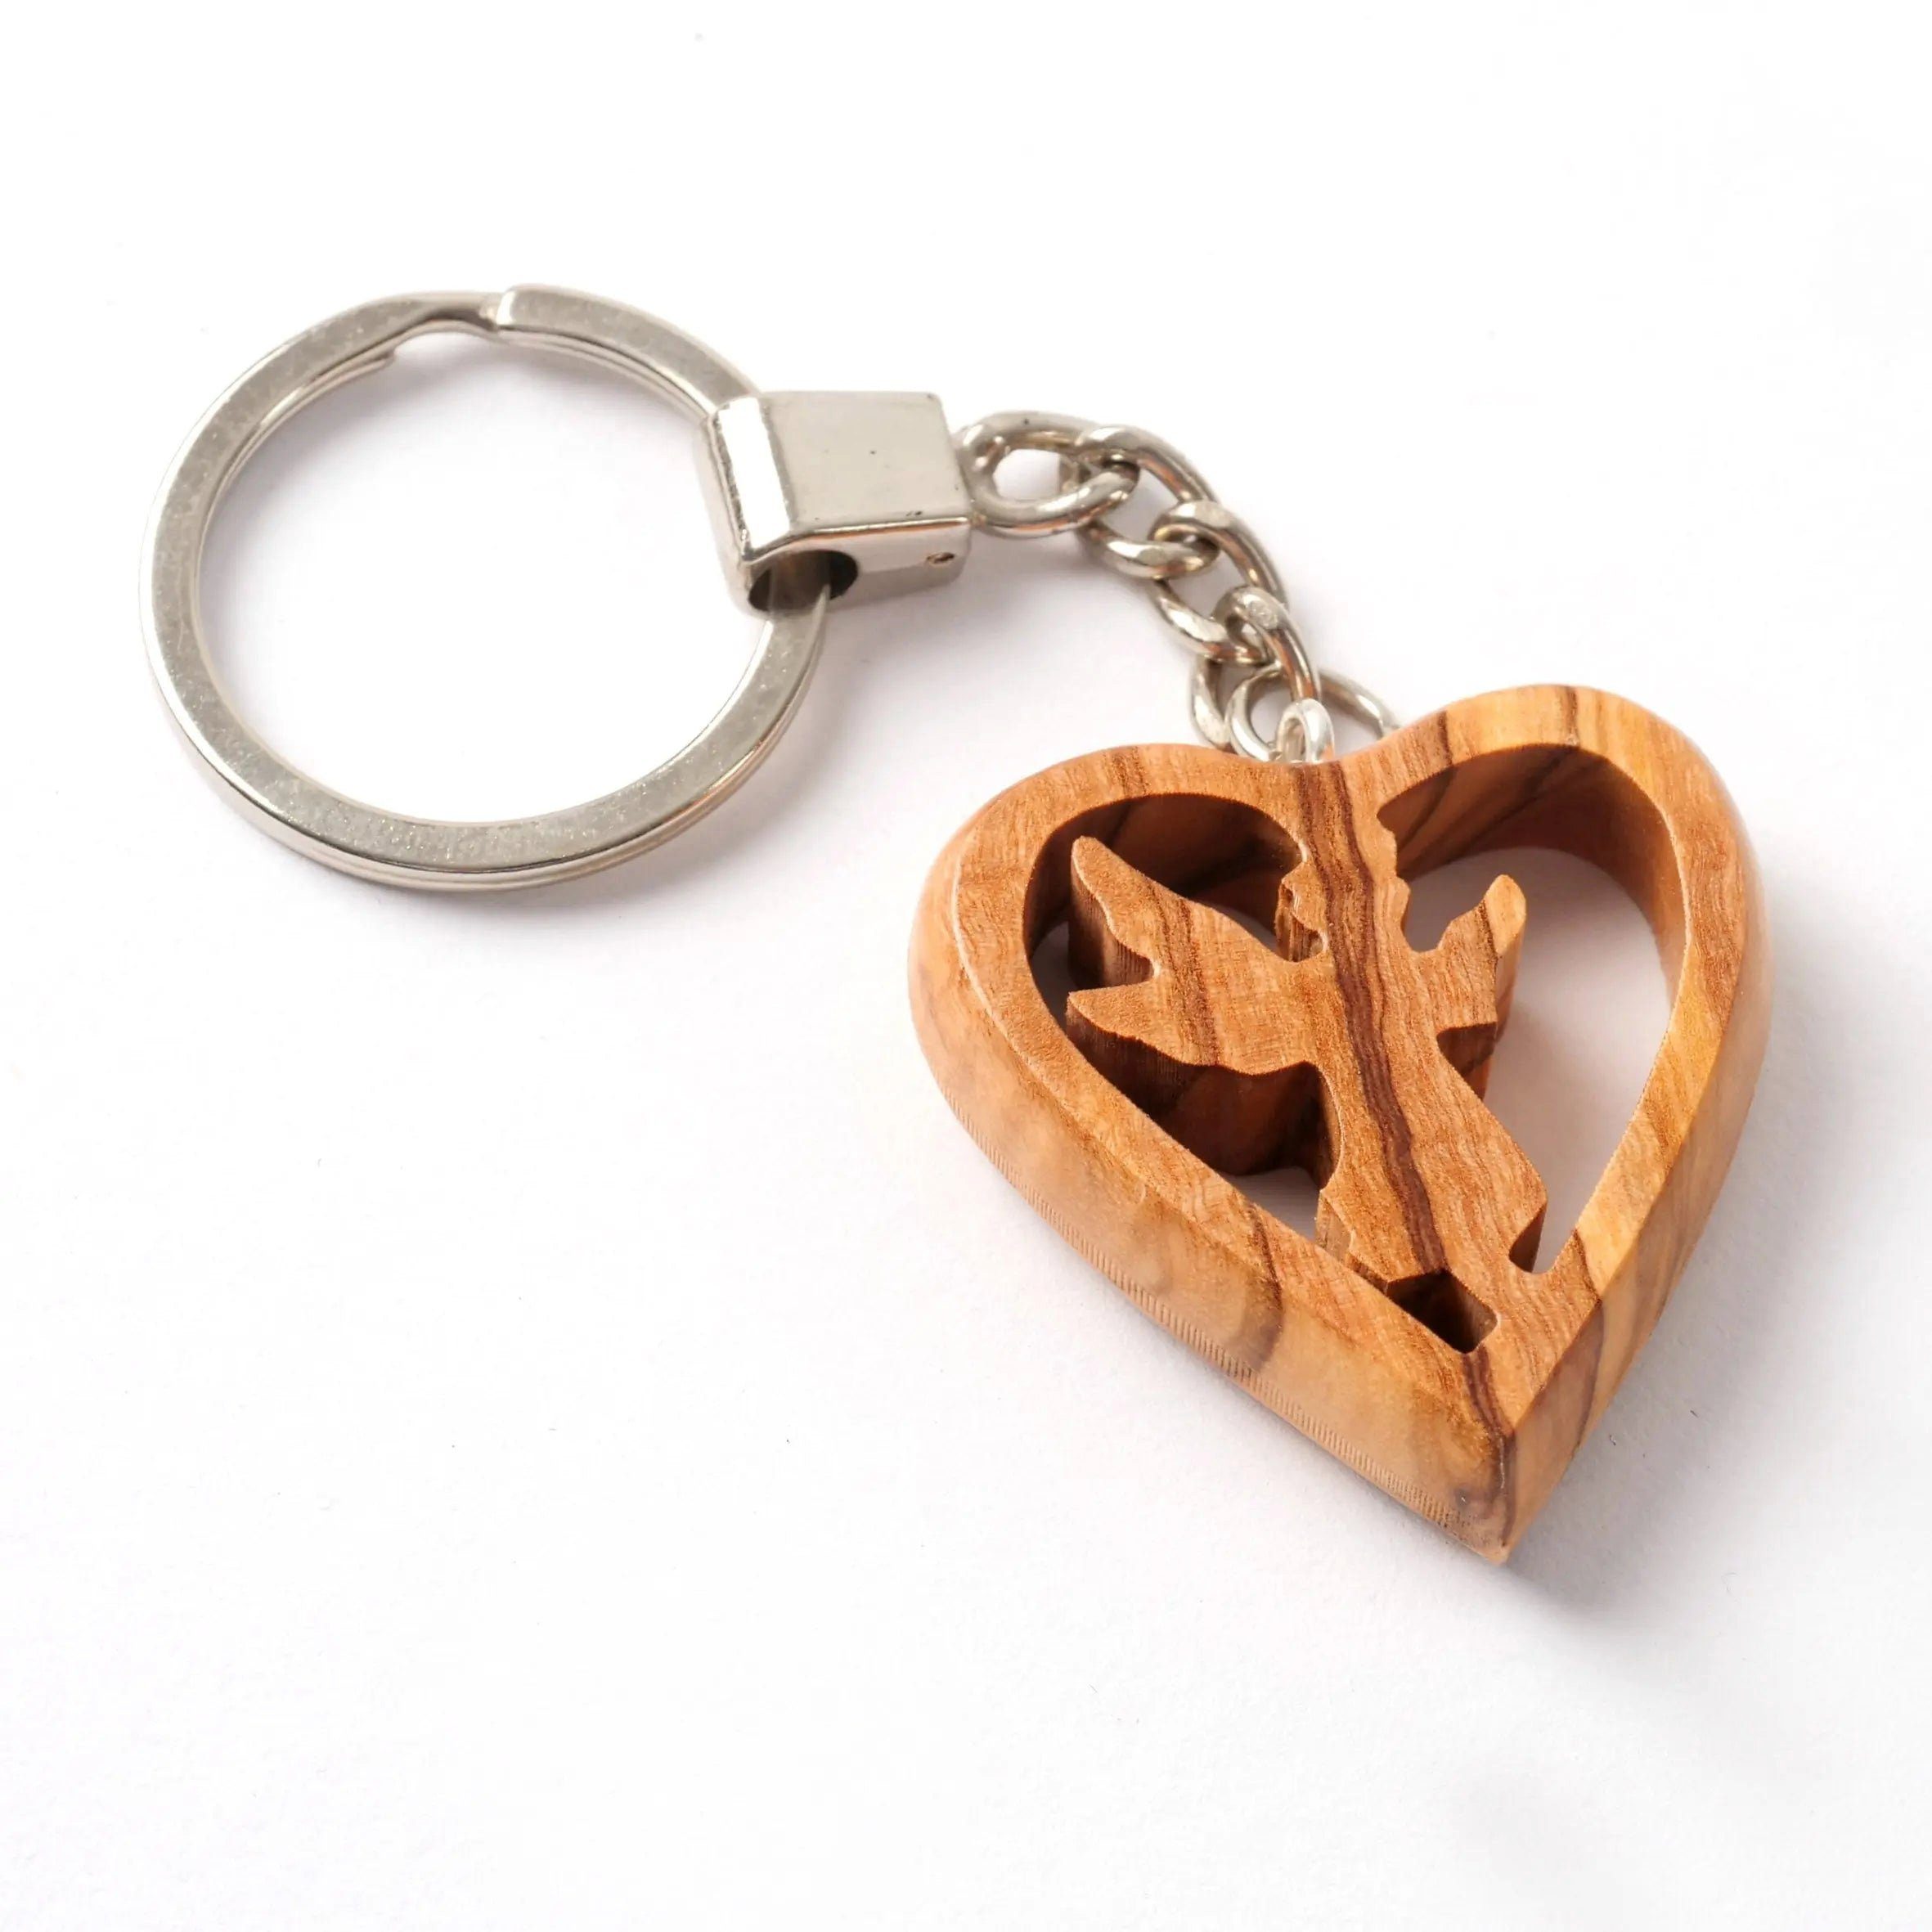 Kassis Engelfigur Schlüsselanhänger mit Schutzengel im Herz aus Olivenholz, handgemacht, umweltfreundlich, Naturprodukt, aus Bethlehem